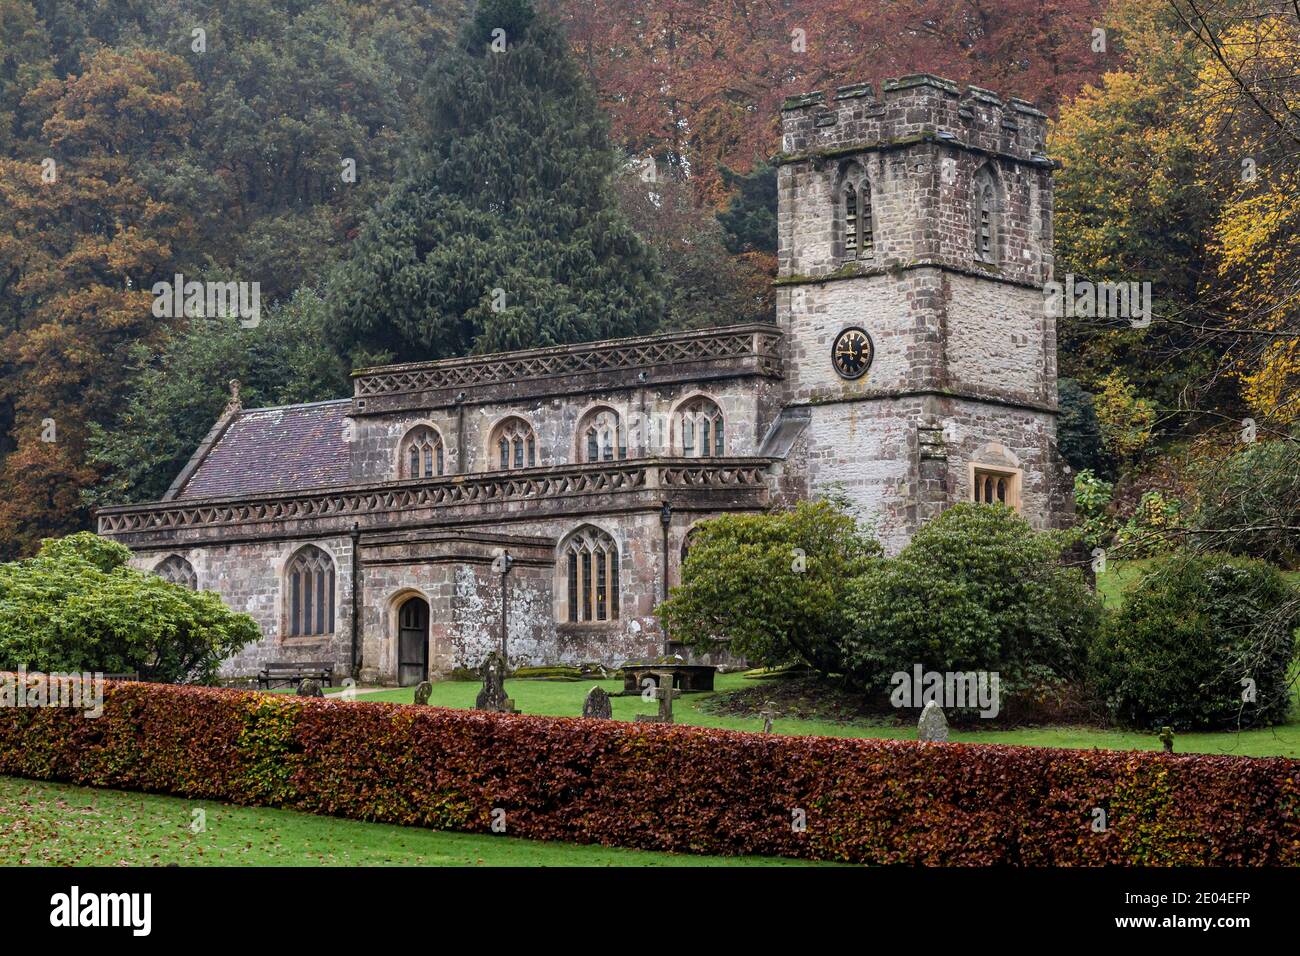 La chiesa di San Pietro del XIV secolo a Stourton, un piccolo villaggio vicino a Stourhead, Wiltshire, Regno Unito Foto Stock